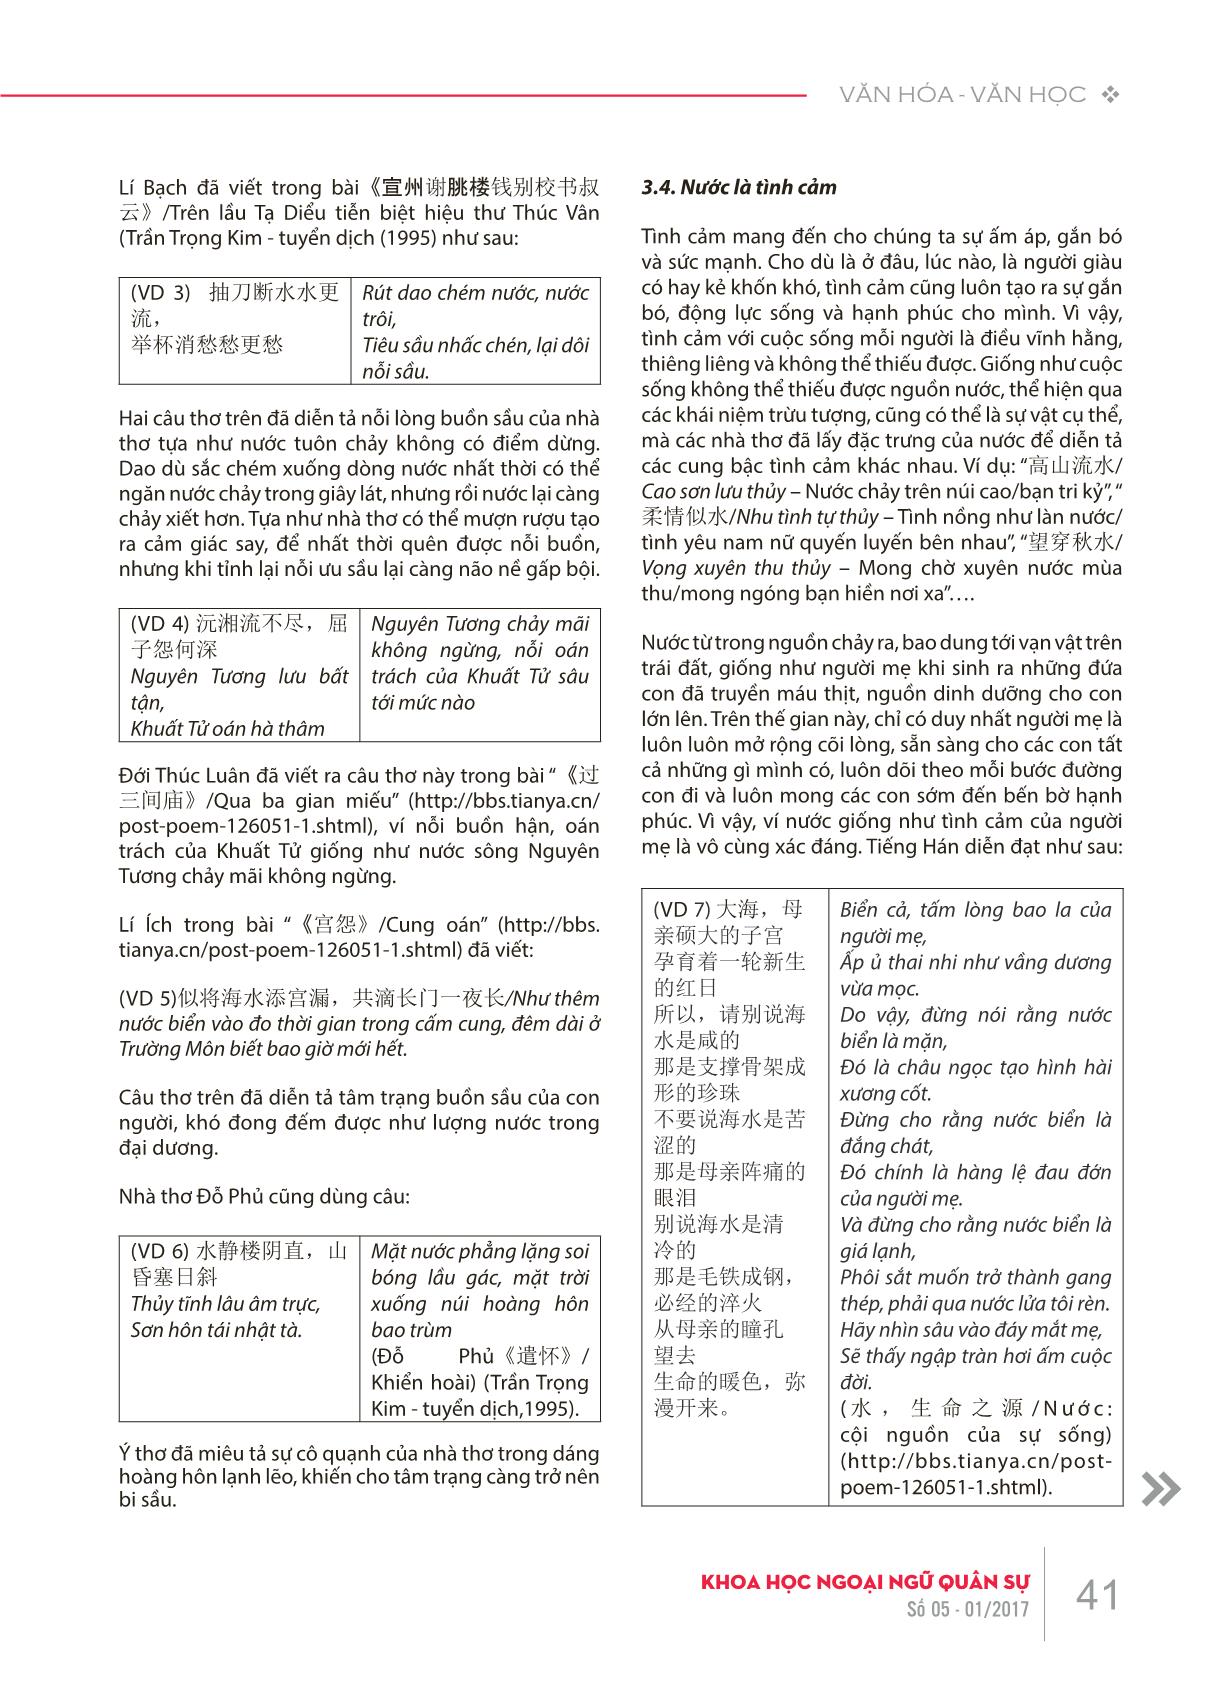 Bàn về ẩn dụ ý niệm 水/nước với con người trong tiếng Hán trang 4